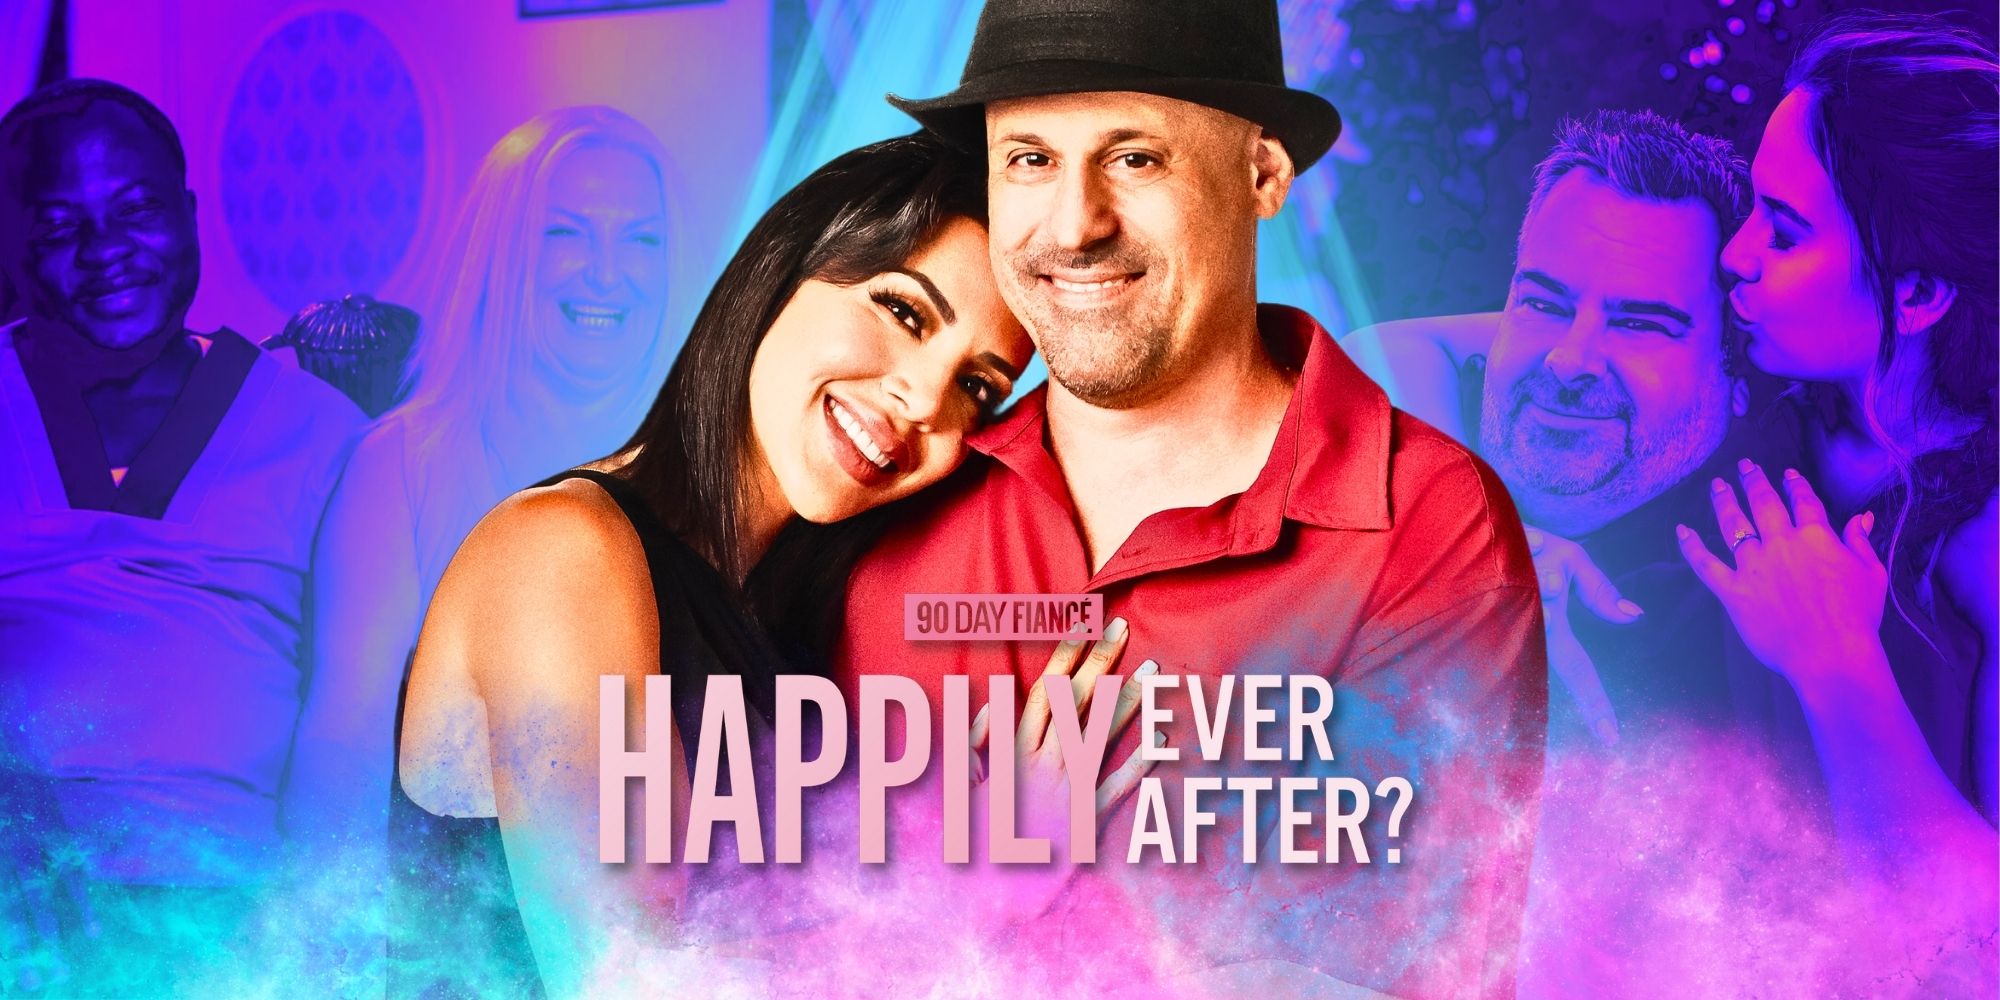 Prometido de 90 días: ¿Felices para siempre?  Se revela el elenco de la temporada 8 con el regreso de 3 parejas controvertidas